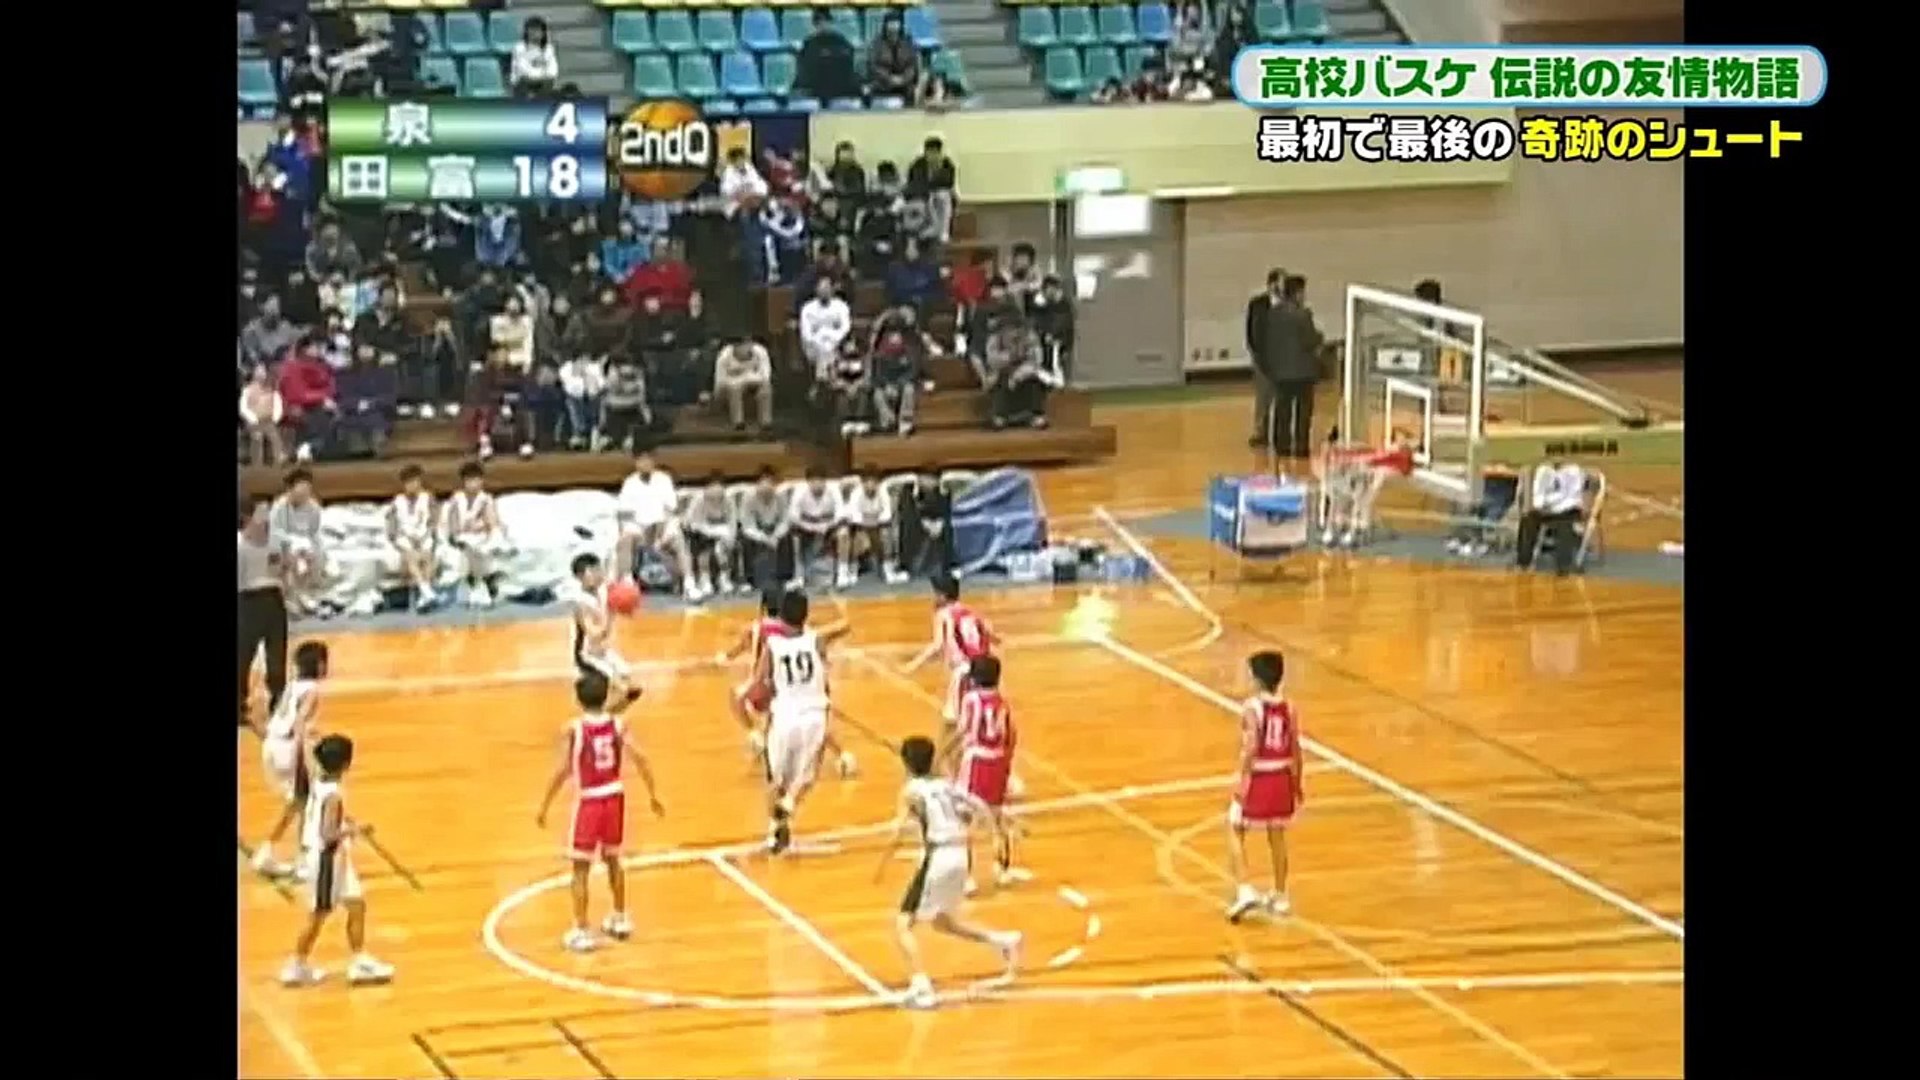 日川高校バスケットボール部 田中正幸 奇跡のシュート Video Dailymotion